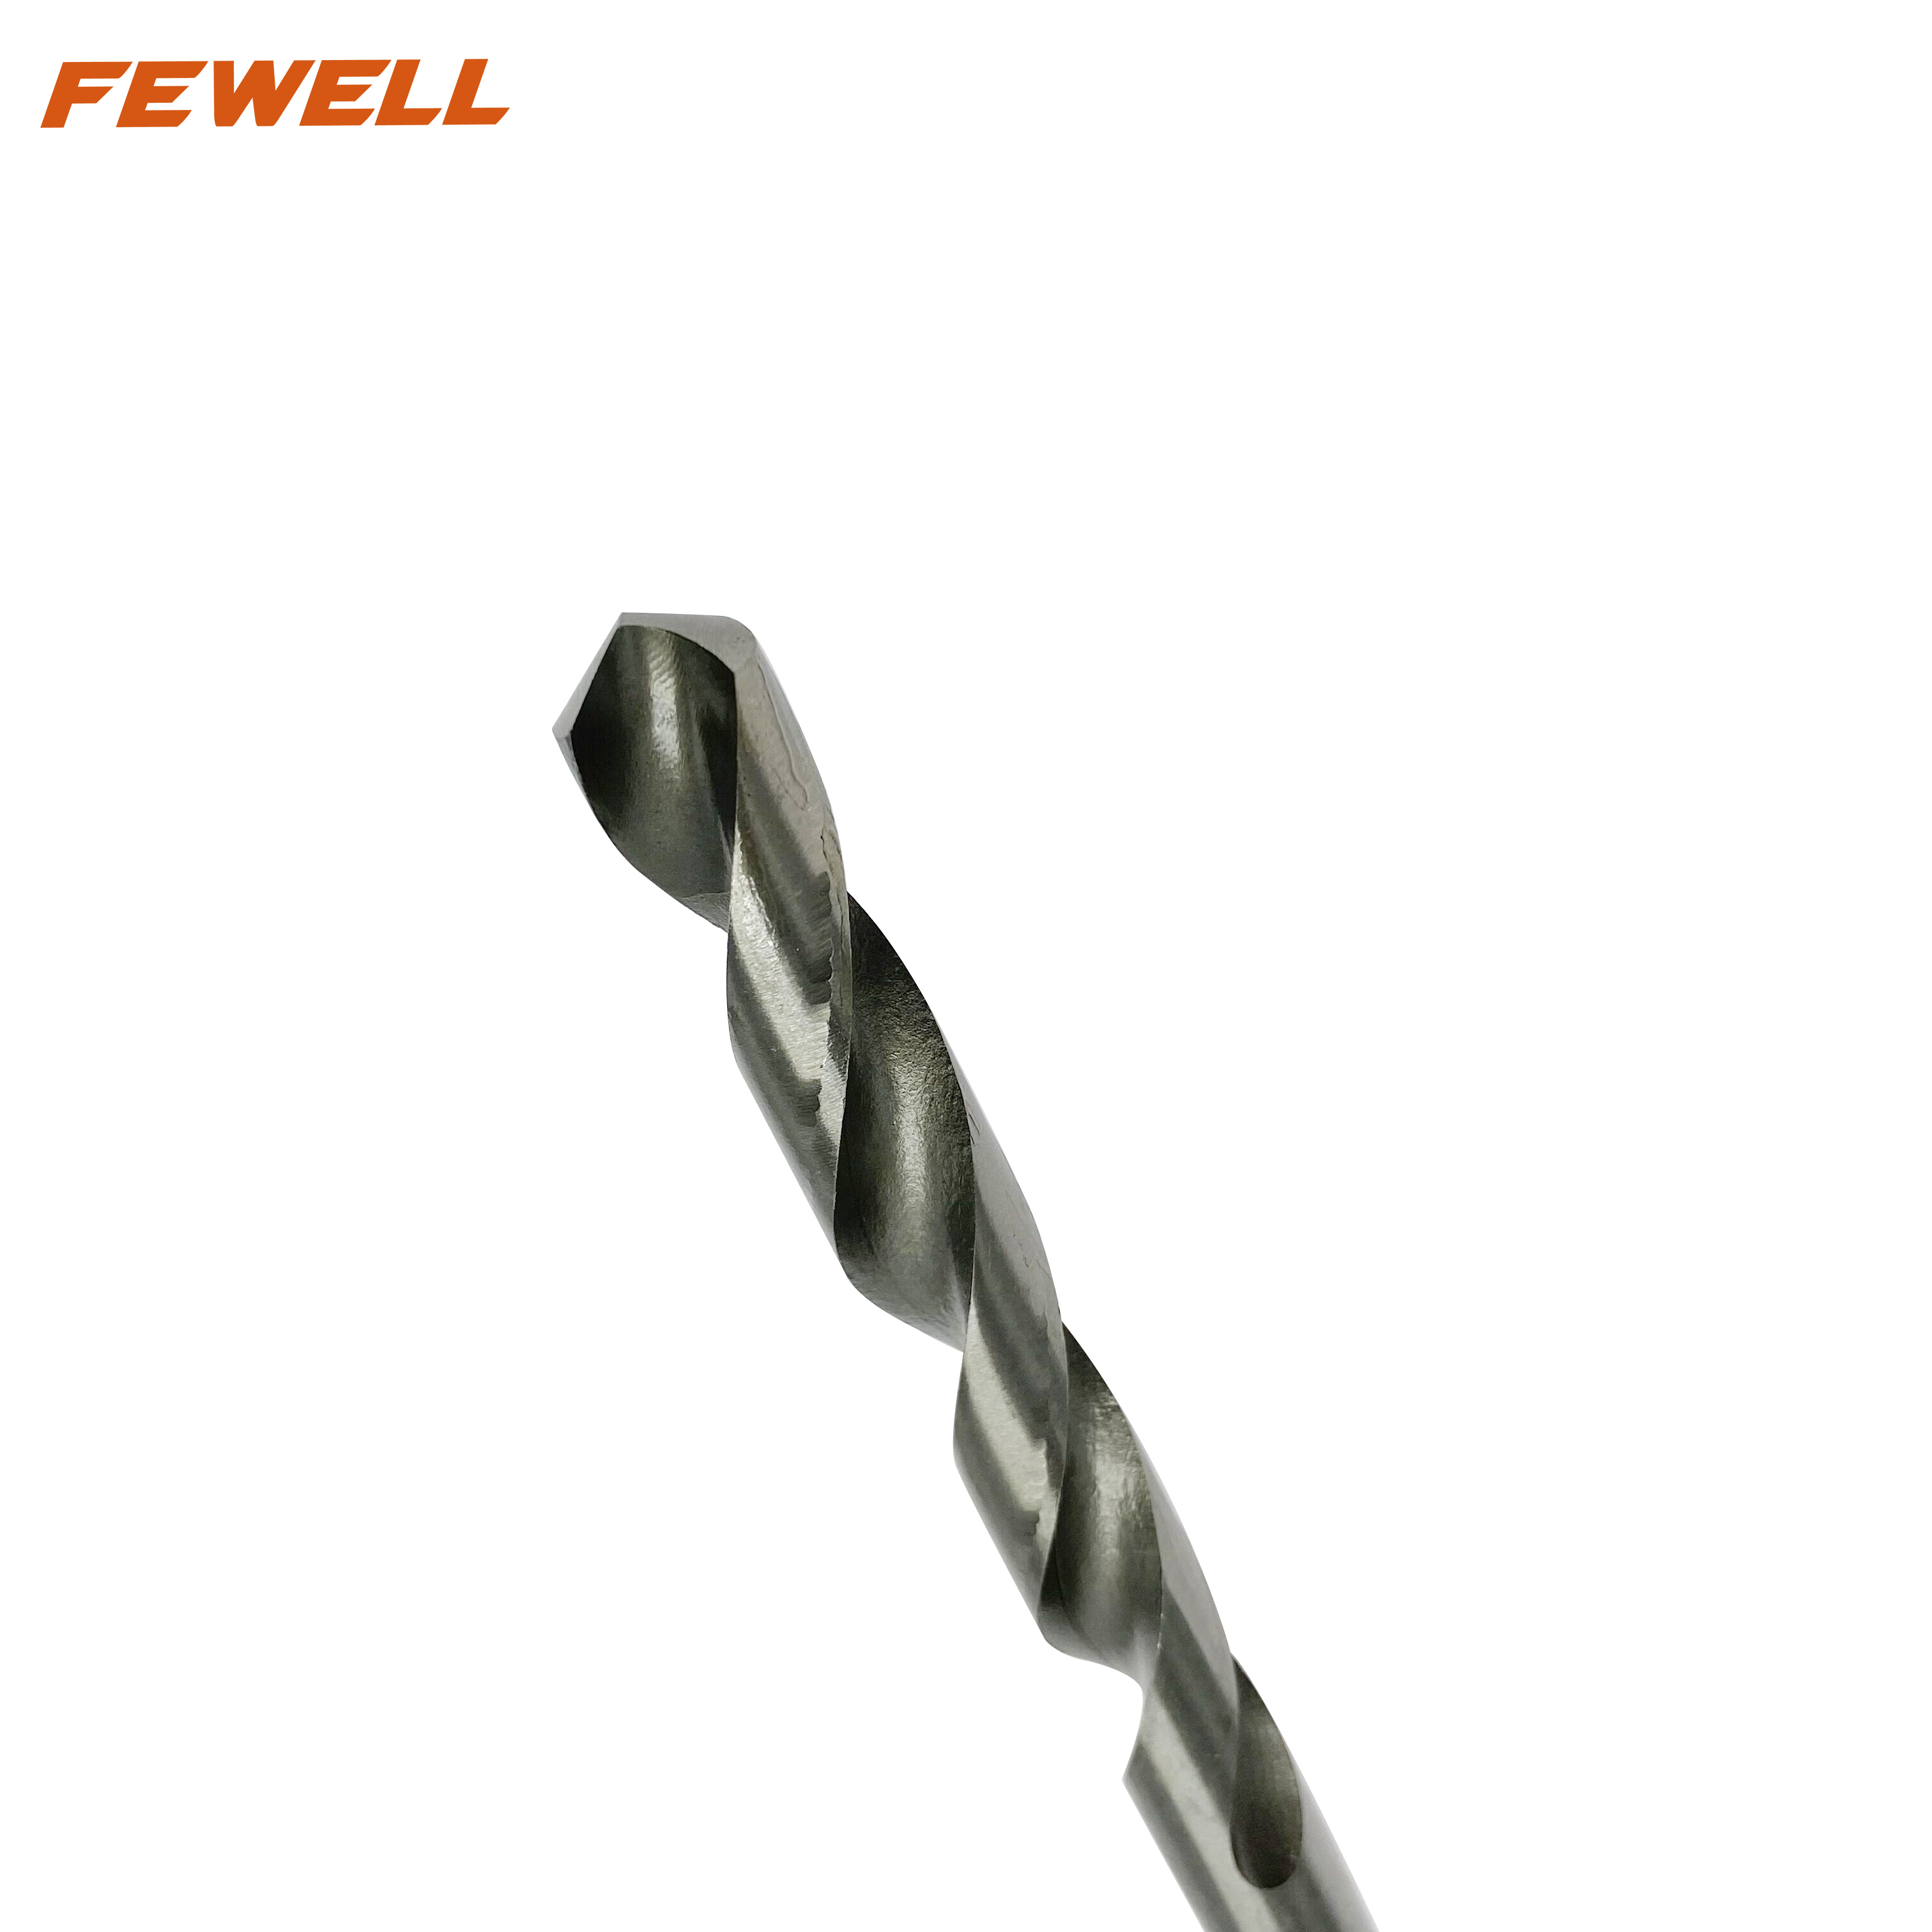 Metal delme için yüksek kaliteli 4241 HSS azaltılmış şaftlı büküm matkap ucu 16 mm